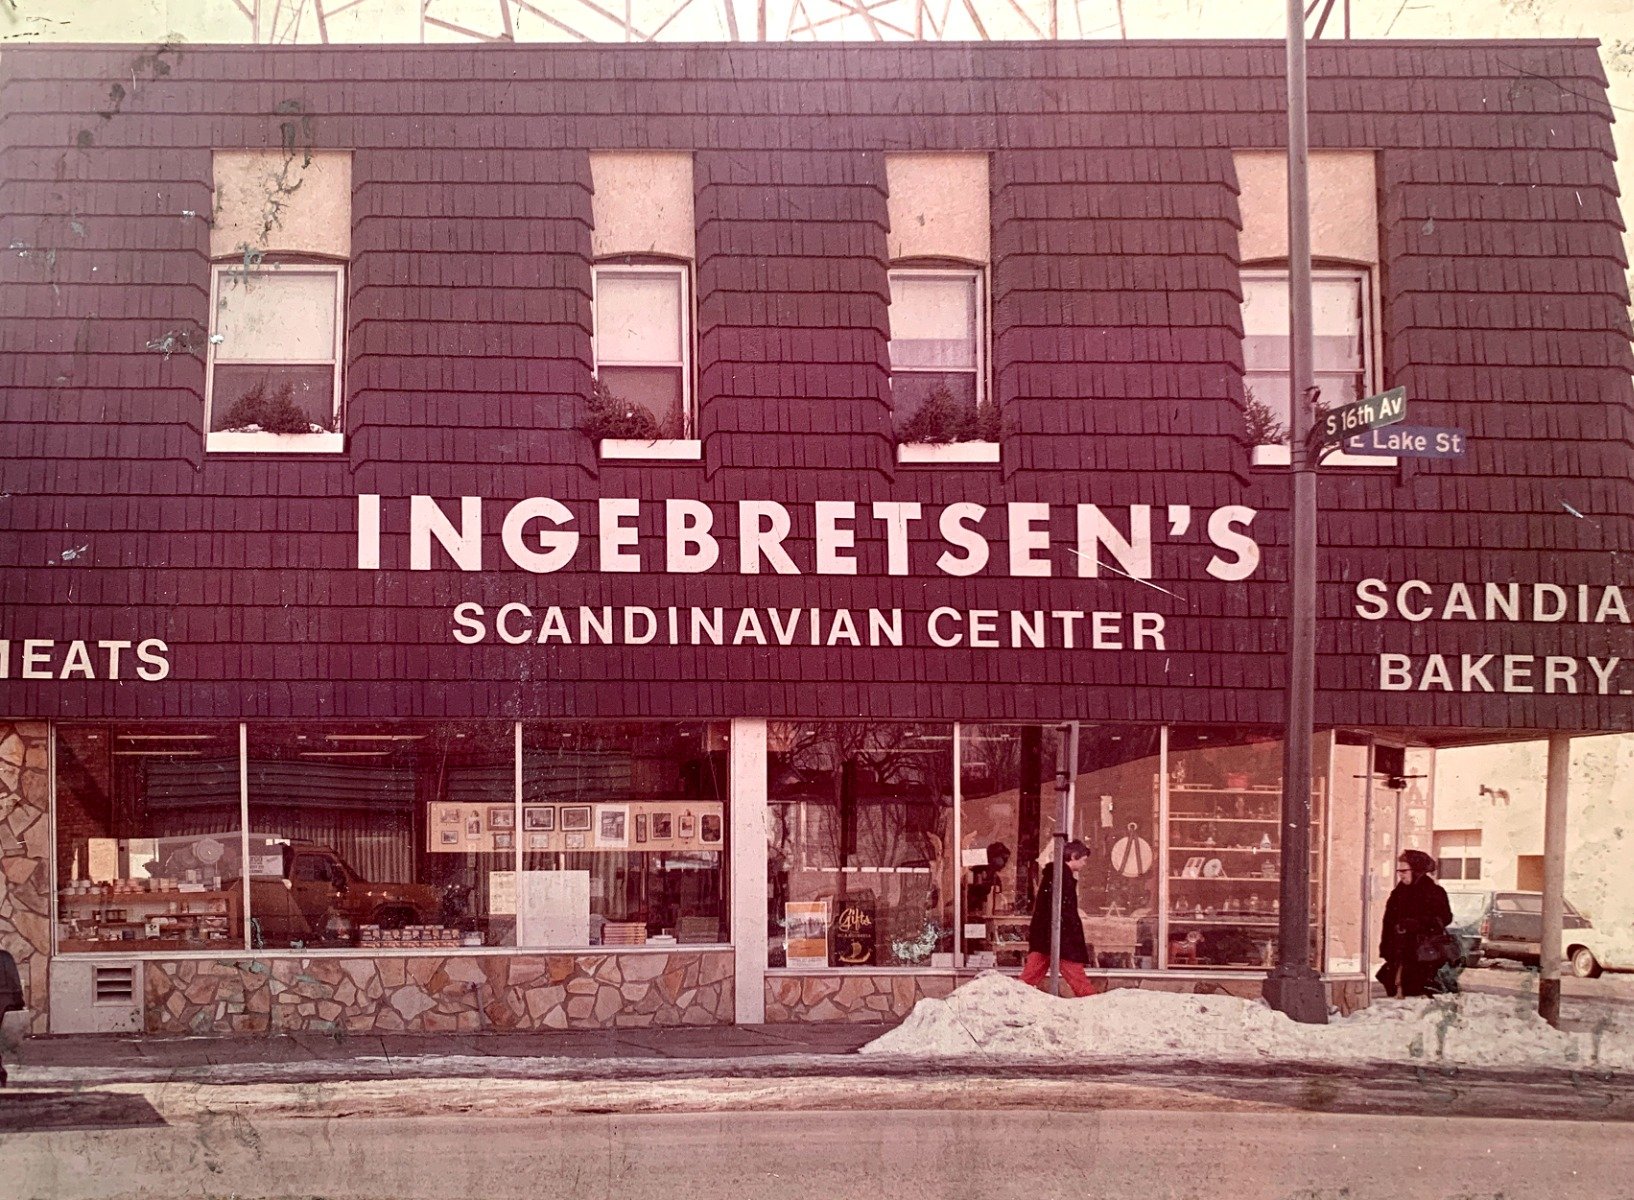 Ingebretsen's 1970s storefront